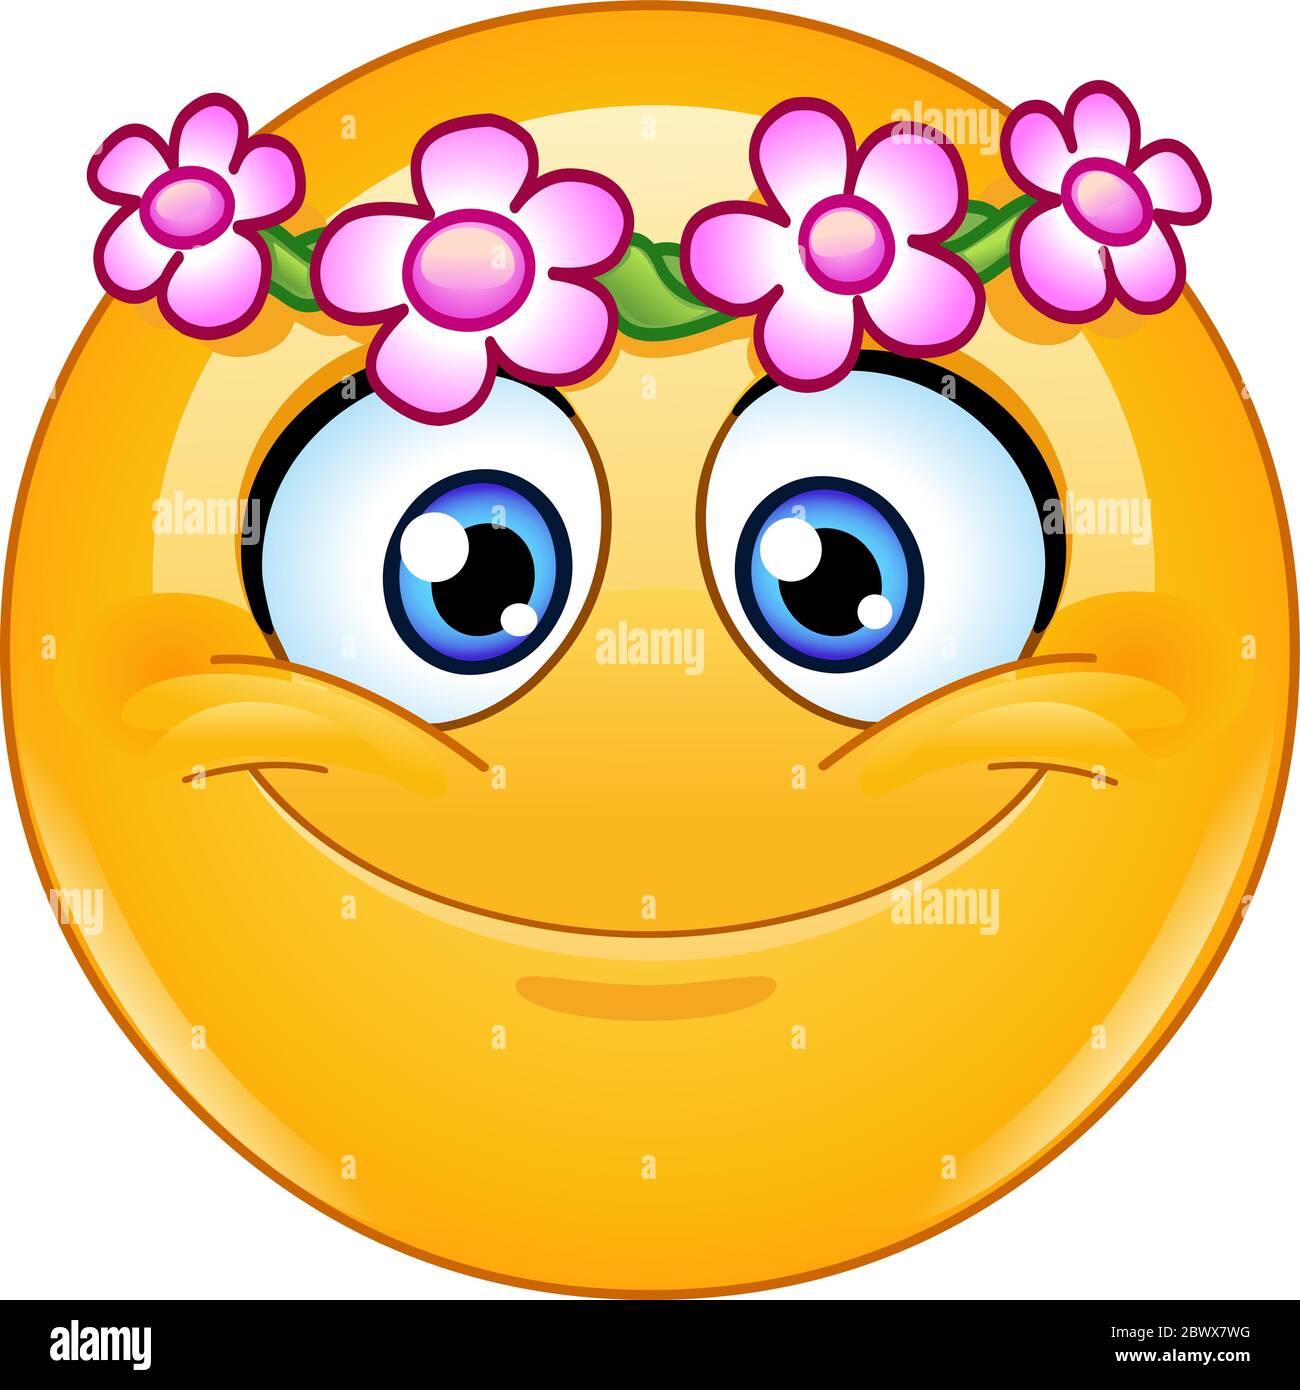 Happy emoji emoticon with flower head wreath Stock Vector Image ...